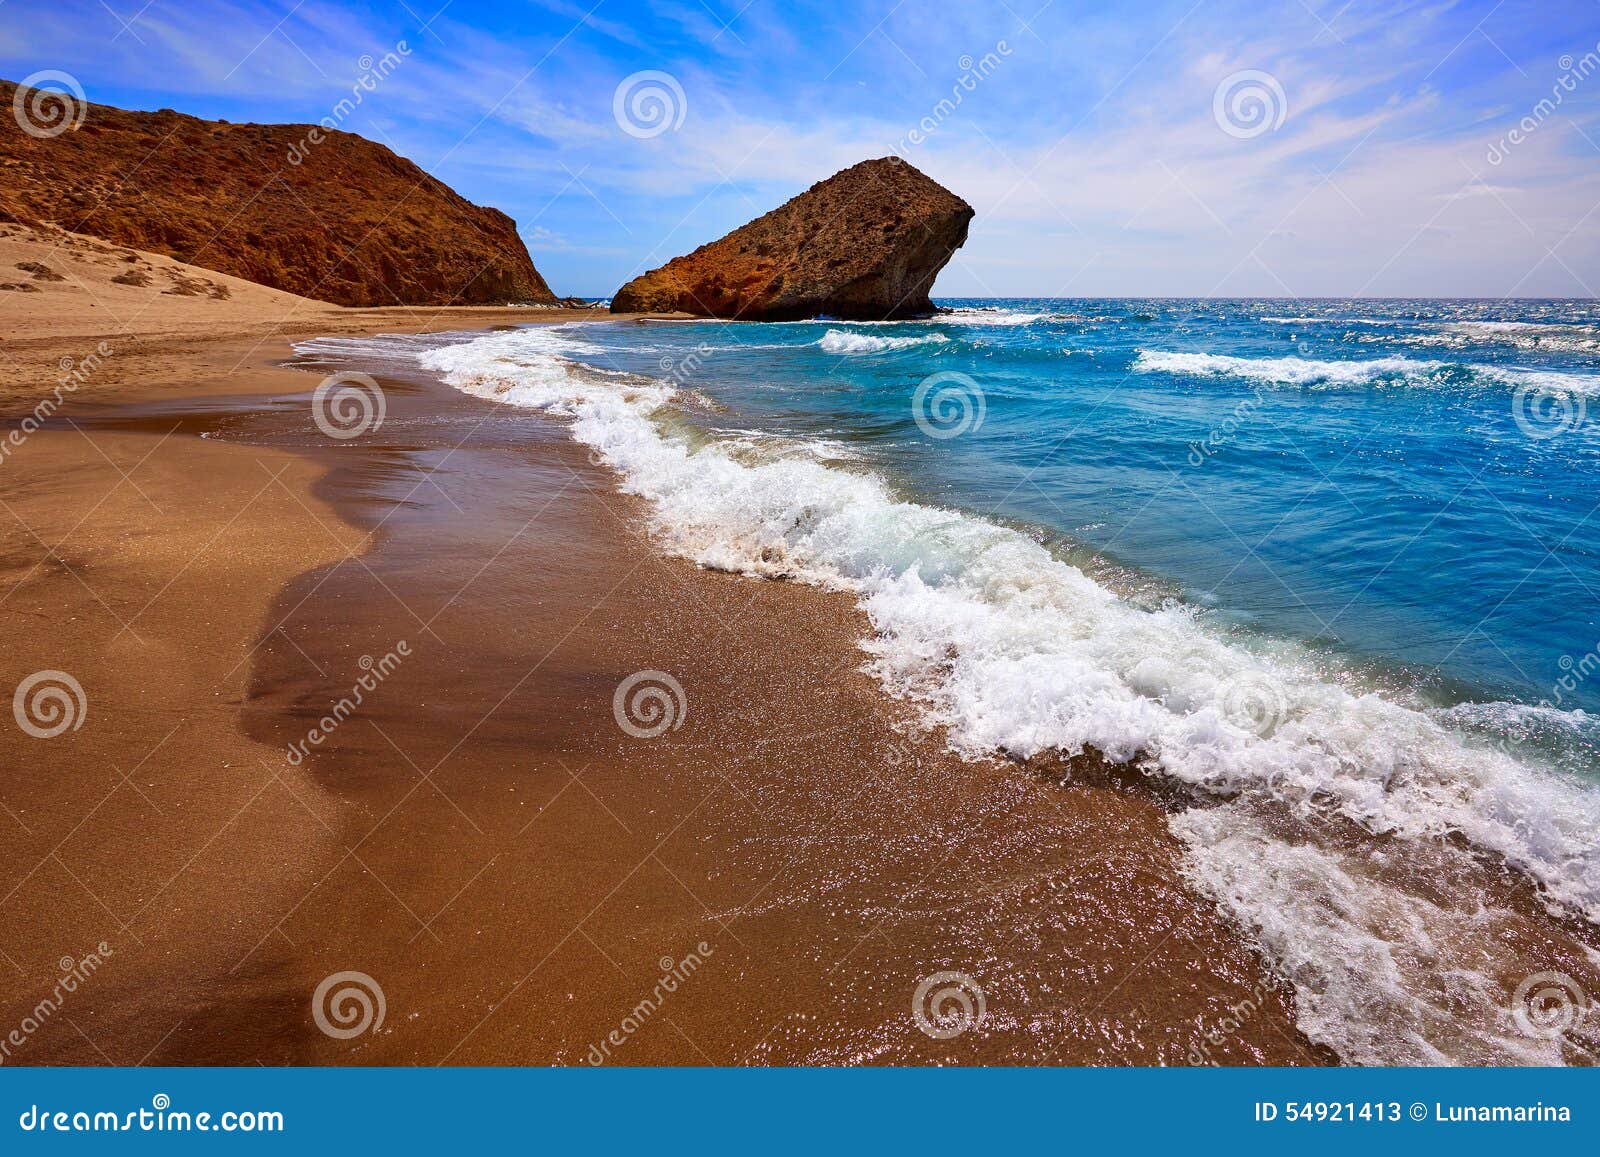 almeria playa del monsul beach at cabo de gata